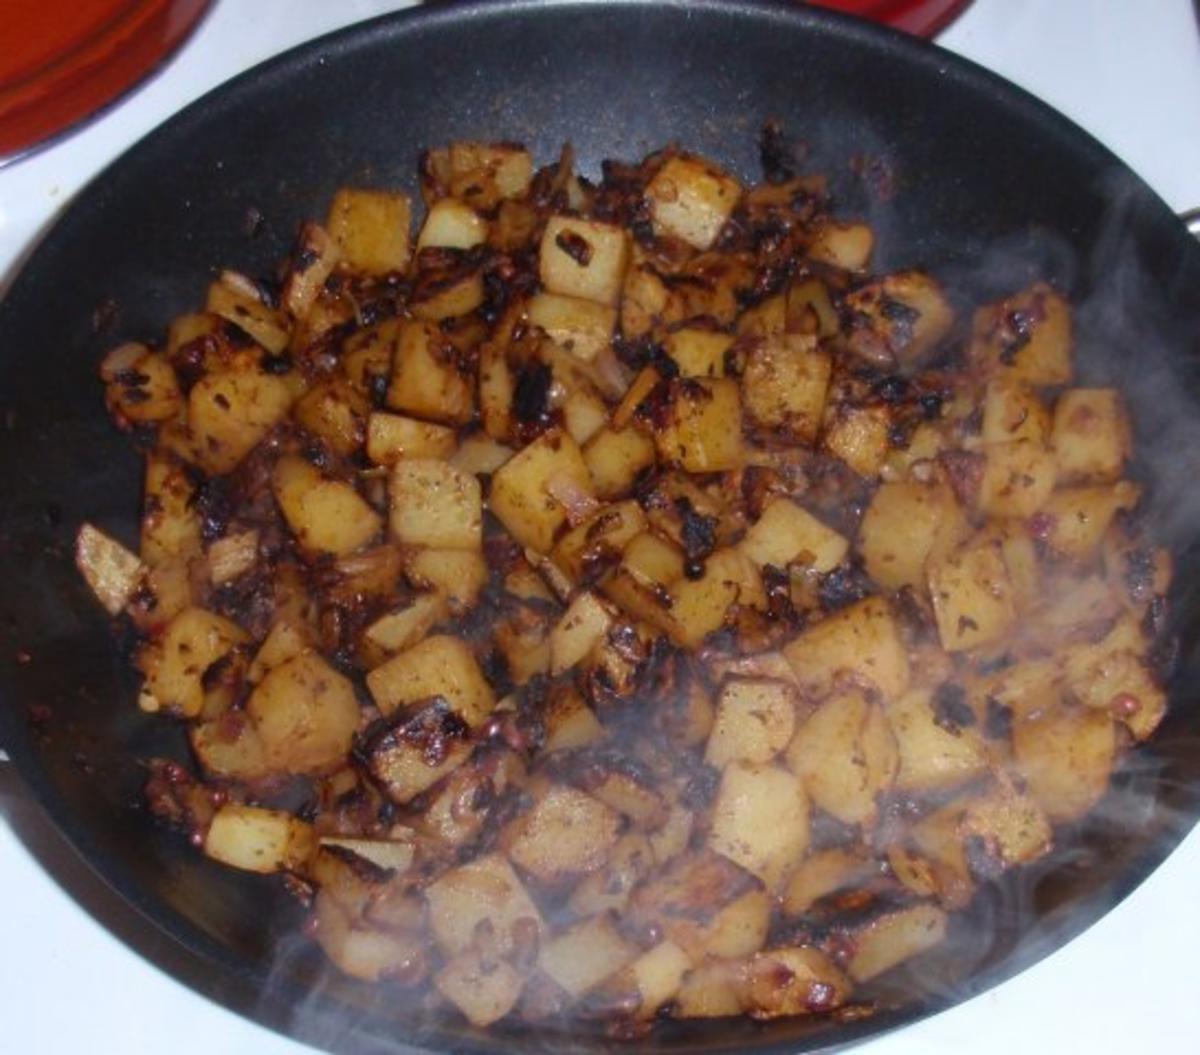 Pangasiusfilet auf Gemüse-Zwiebelbett und Bratkartoffeln - Rezept - Bild Nr. 12